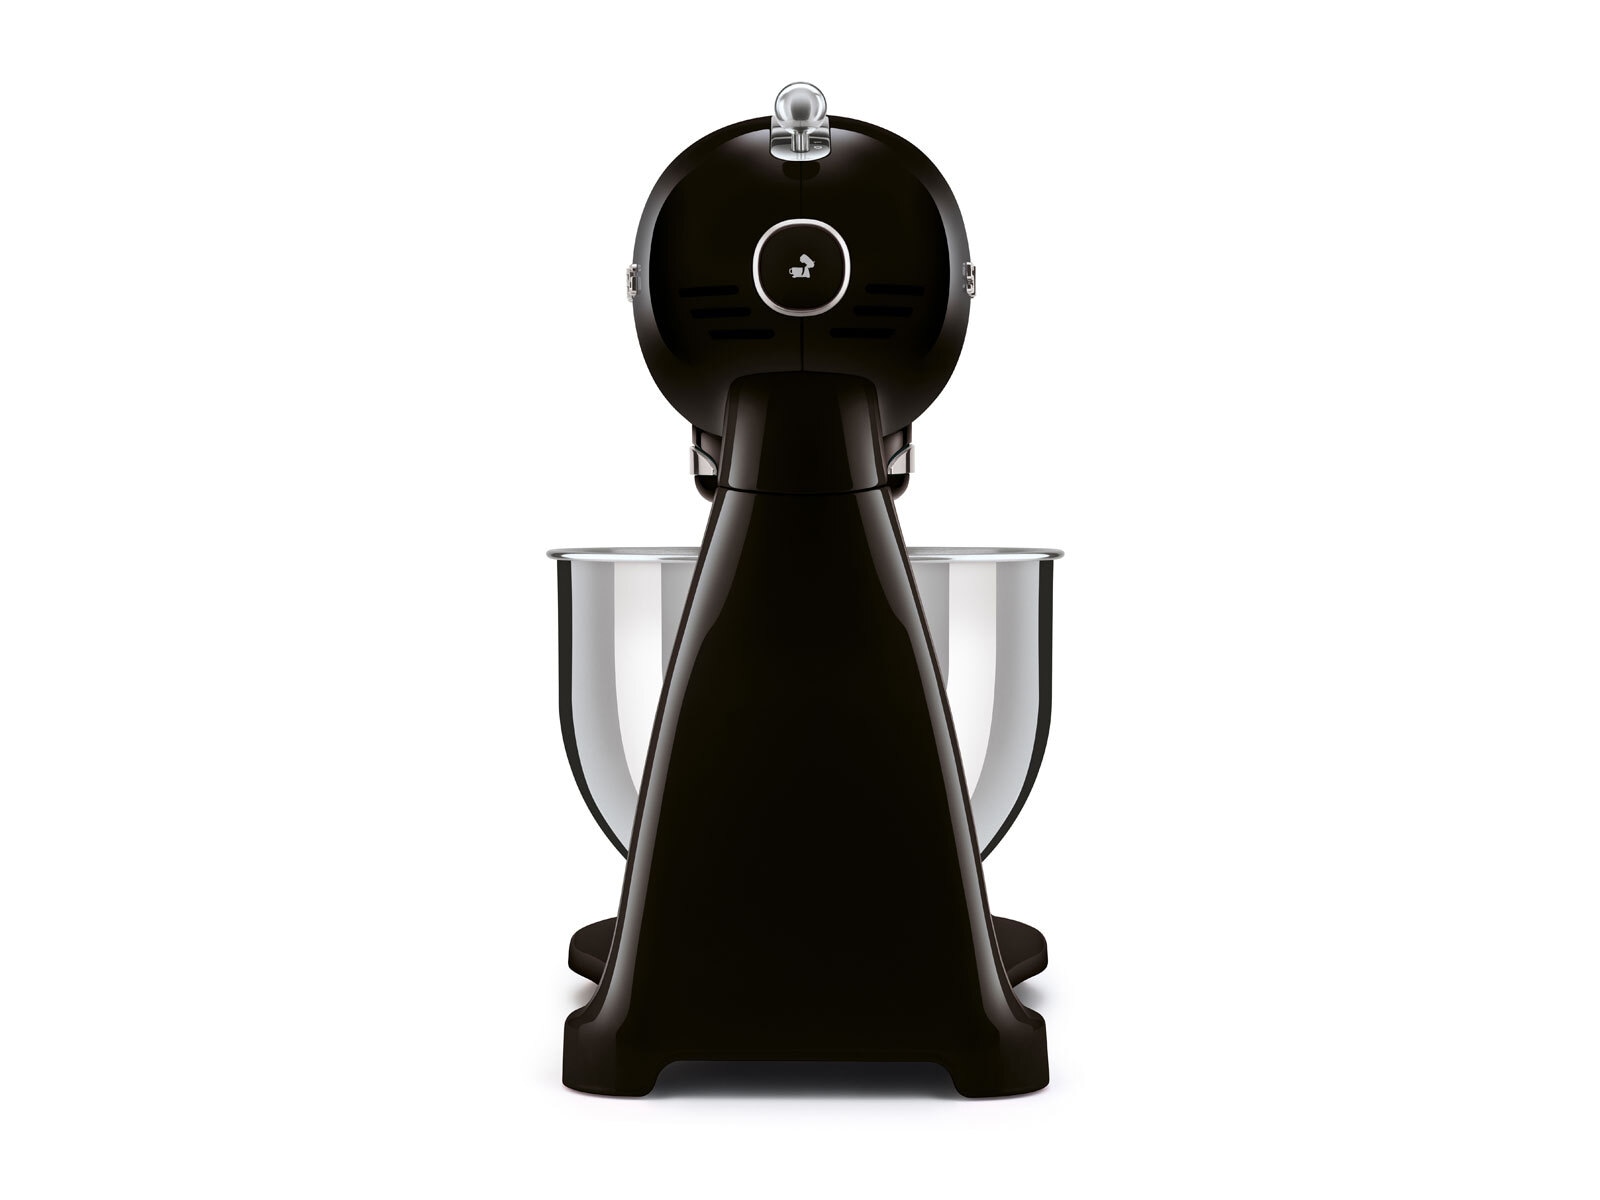 SMEG Küchenmaschine Full-Color schwarz/ silberfarbig